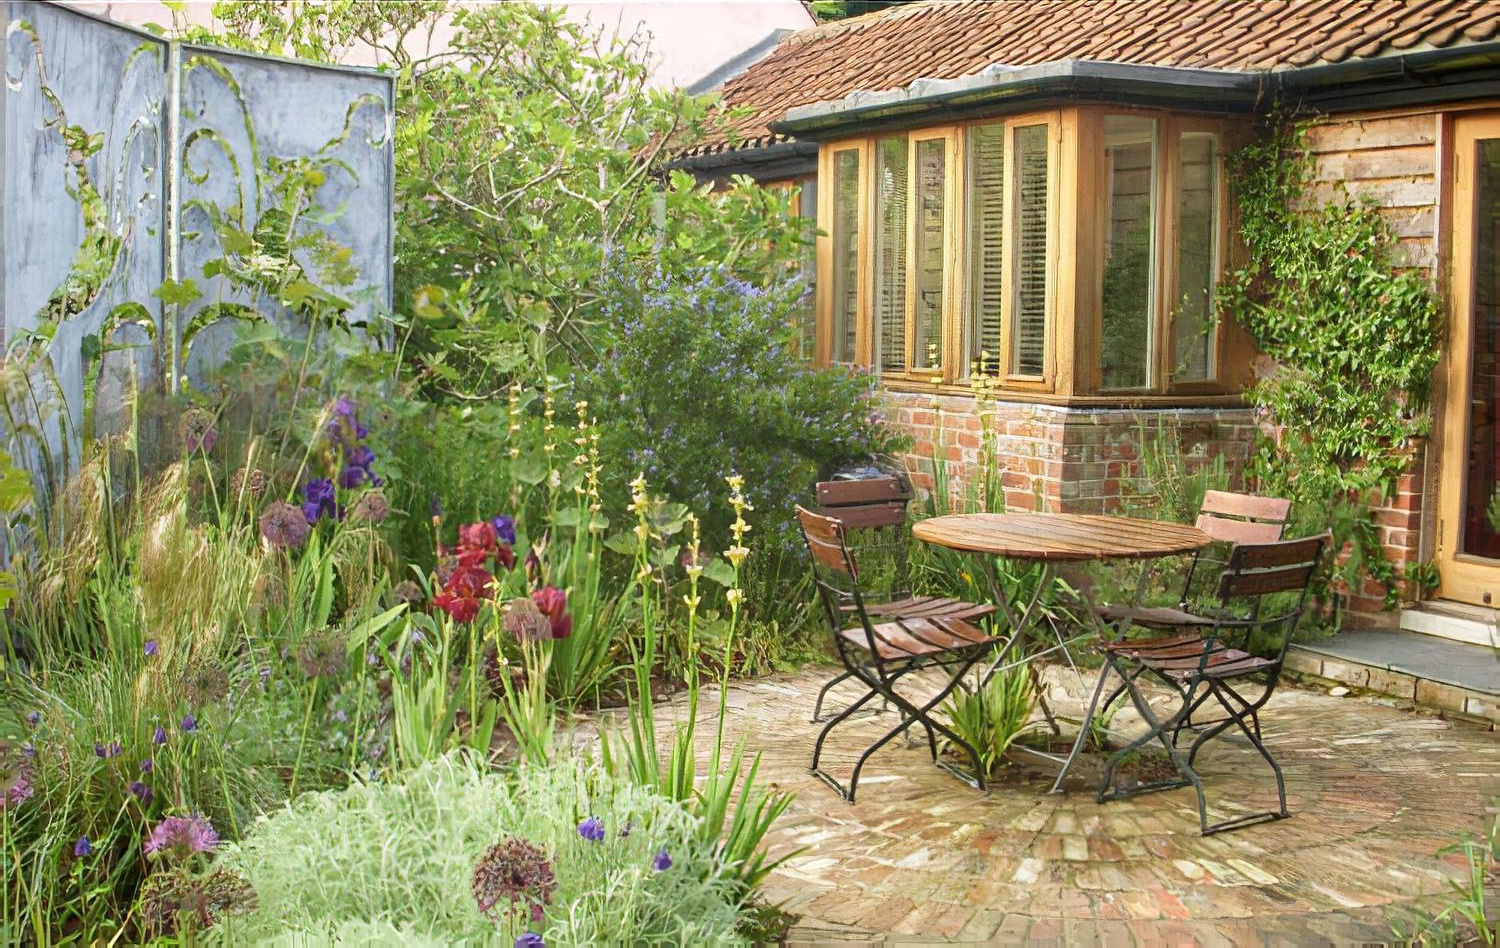 Sue townsend suffolk - two gardens in one 